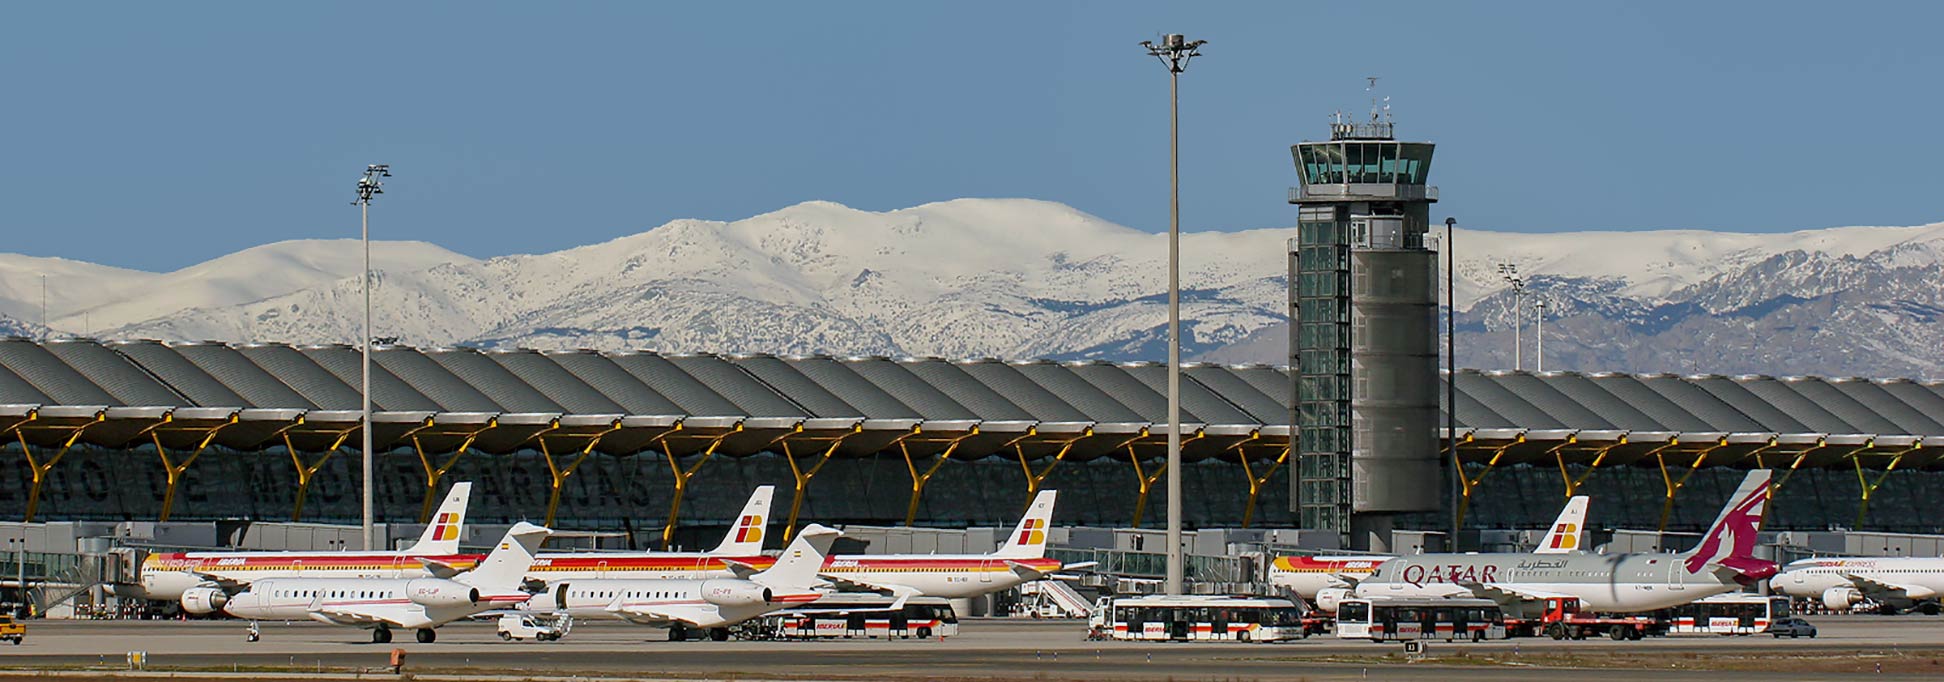 Madrid Barajas Airport (MAD), Spain